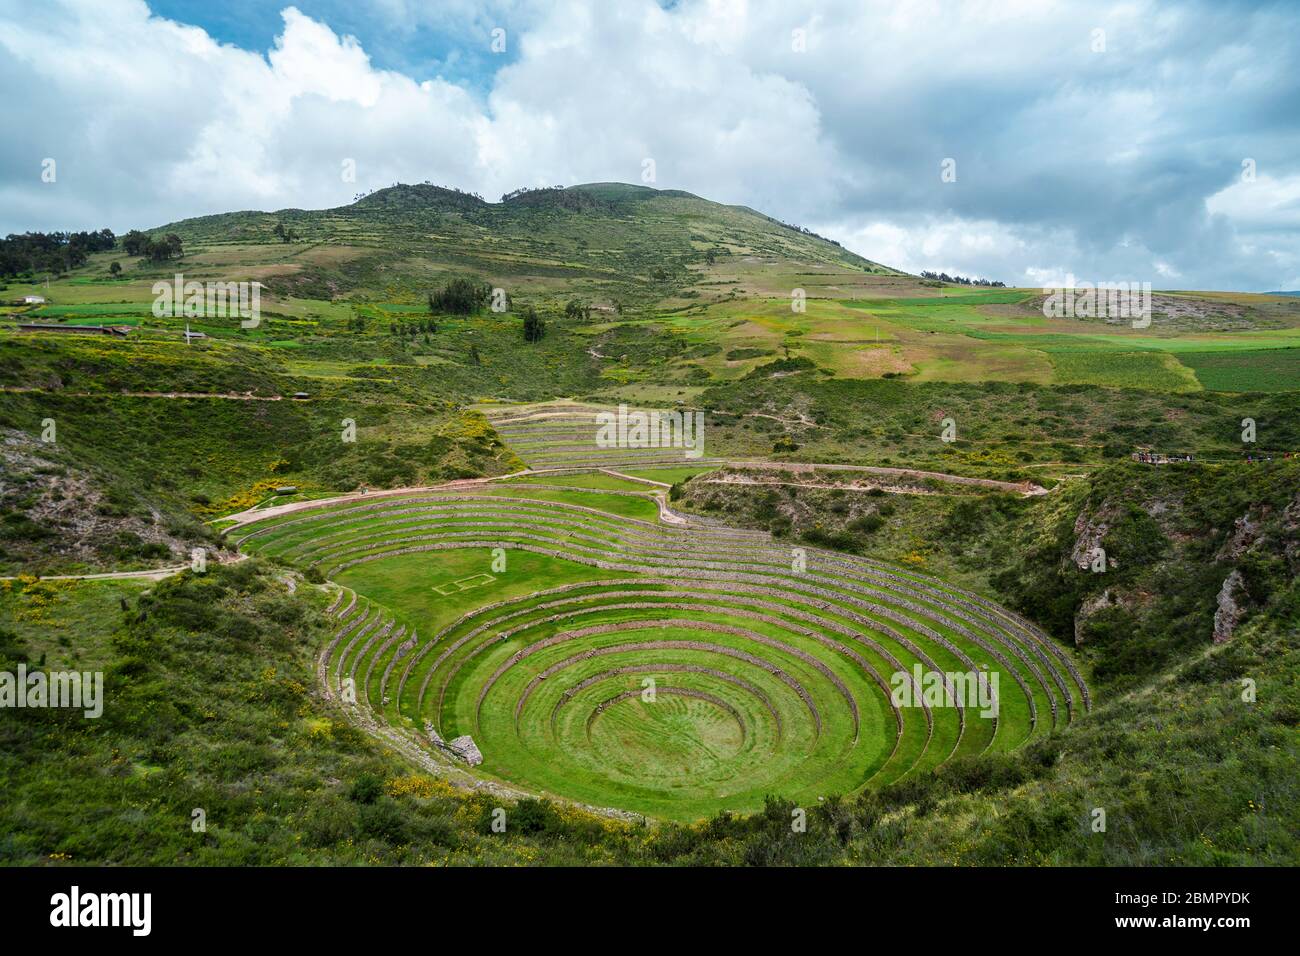 Terrasses circulaires Inca de Moray, site archéologique de la Vallée Sacrée, région de Cusco, Pérou, Amérique du Sud. Banque D'Images